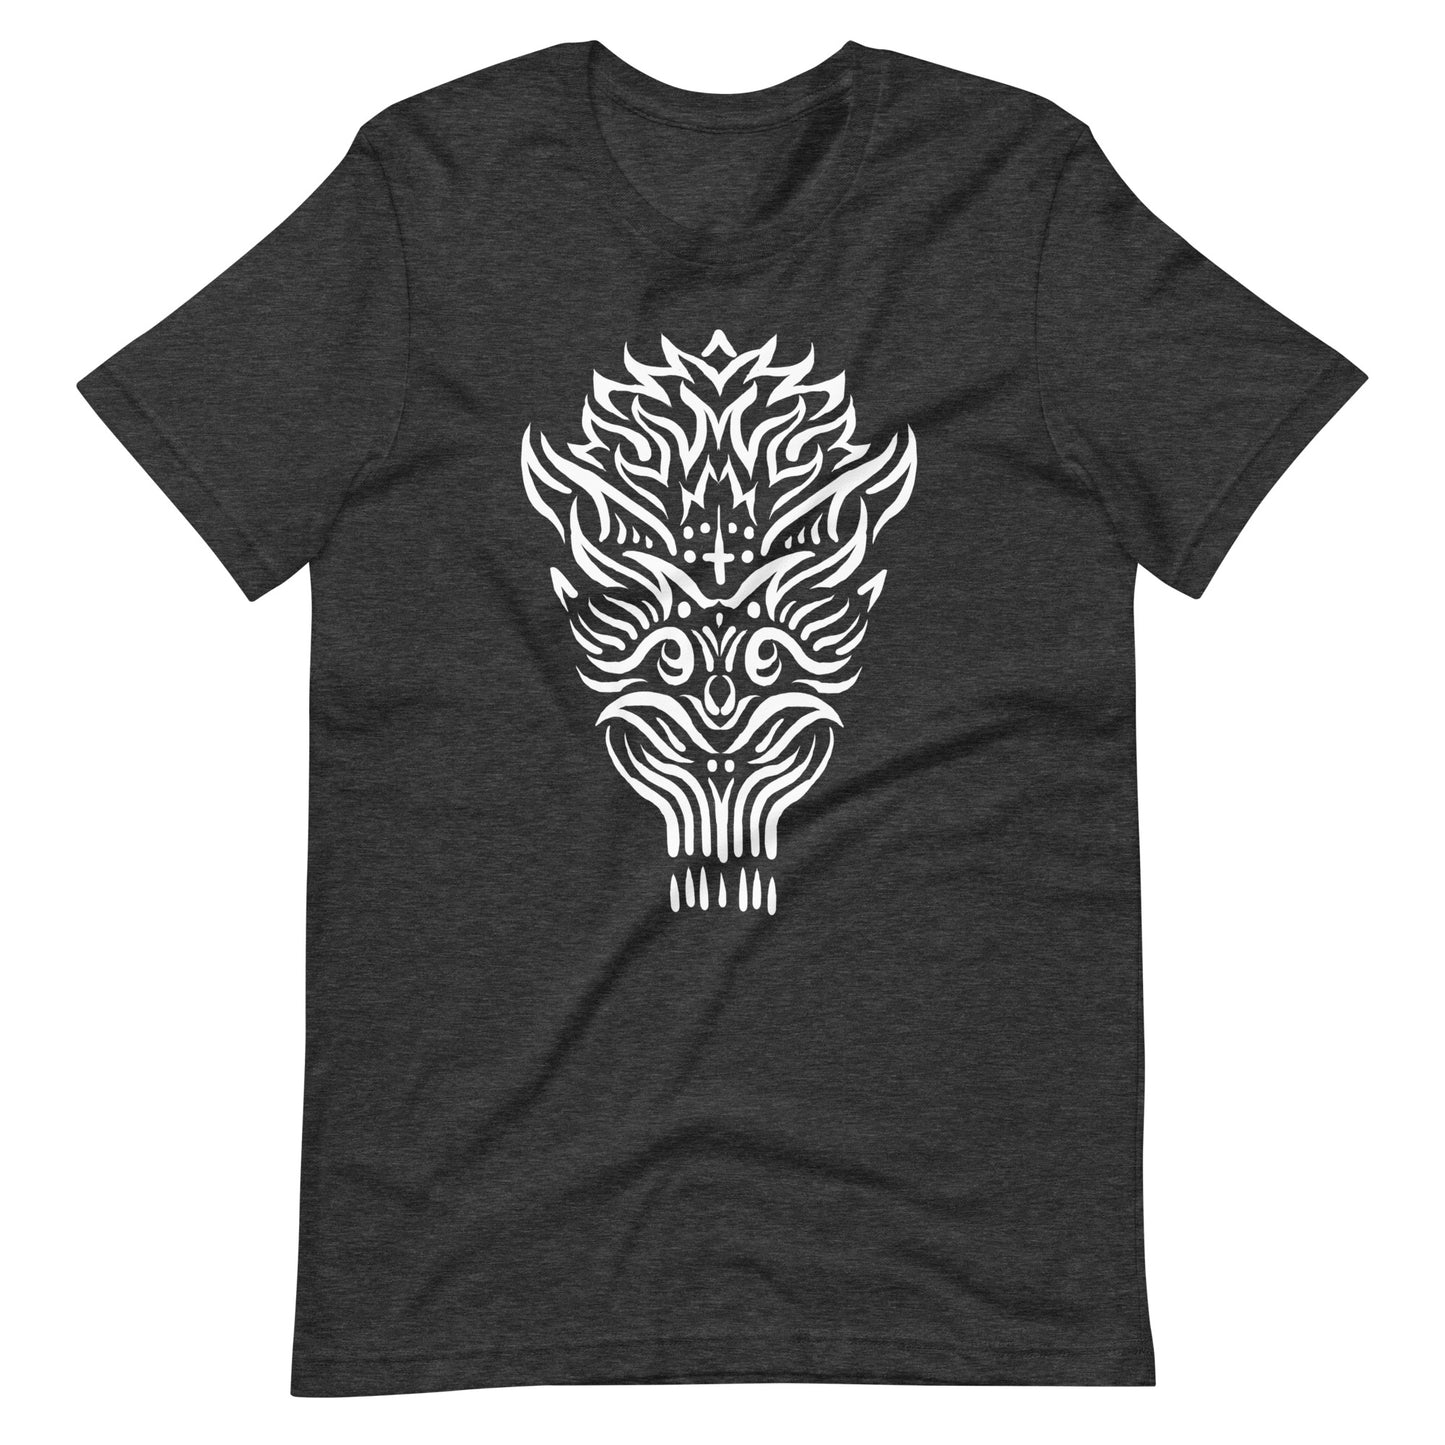 The Oldest Devil - Men's t-shirt - Dark Grey Heather Front